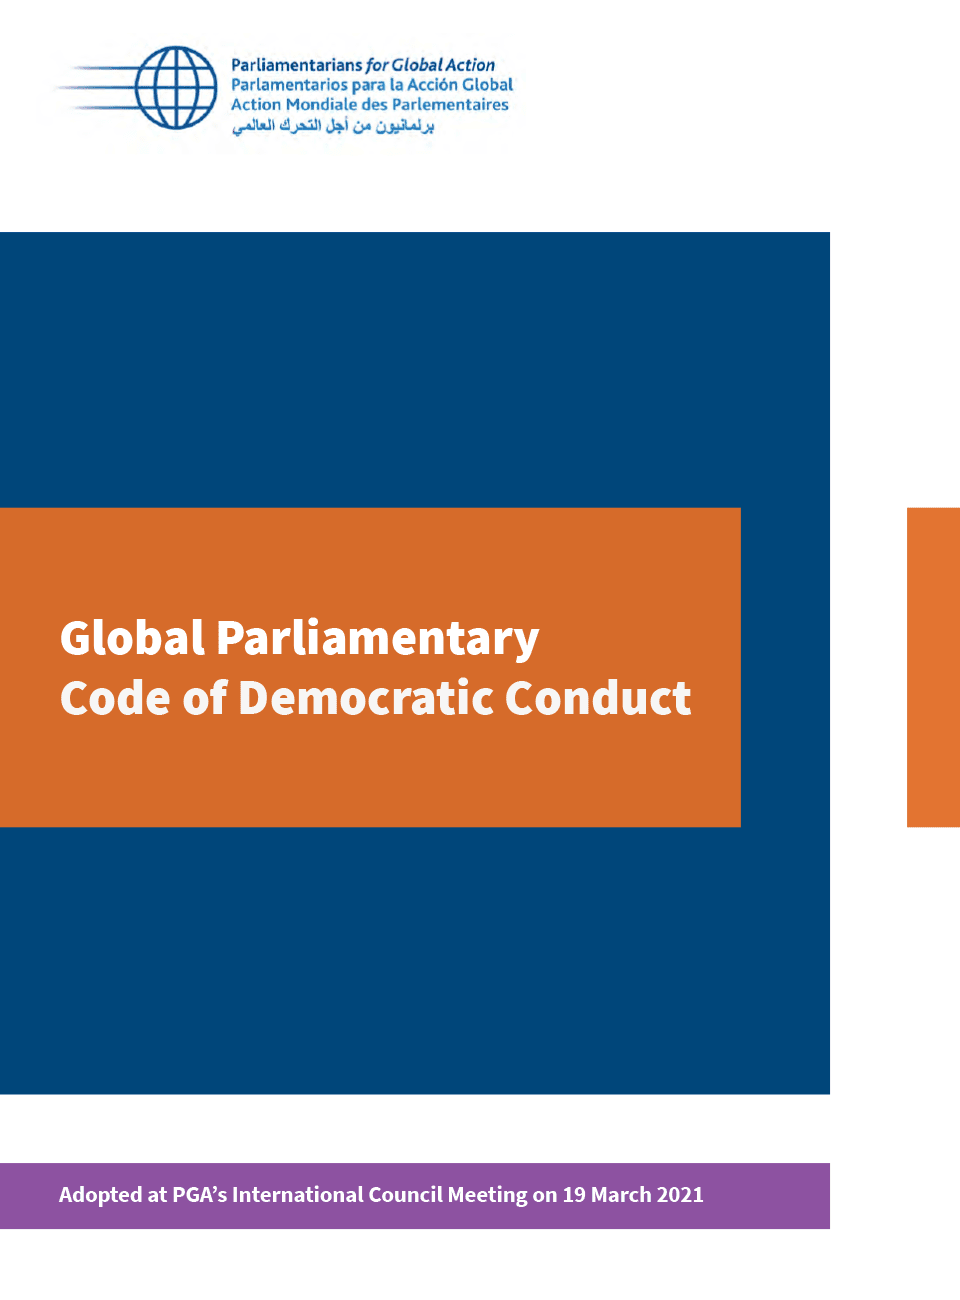 Código Parlamentario Global de Conducta Democrática